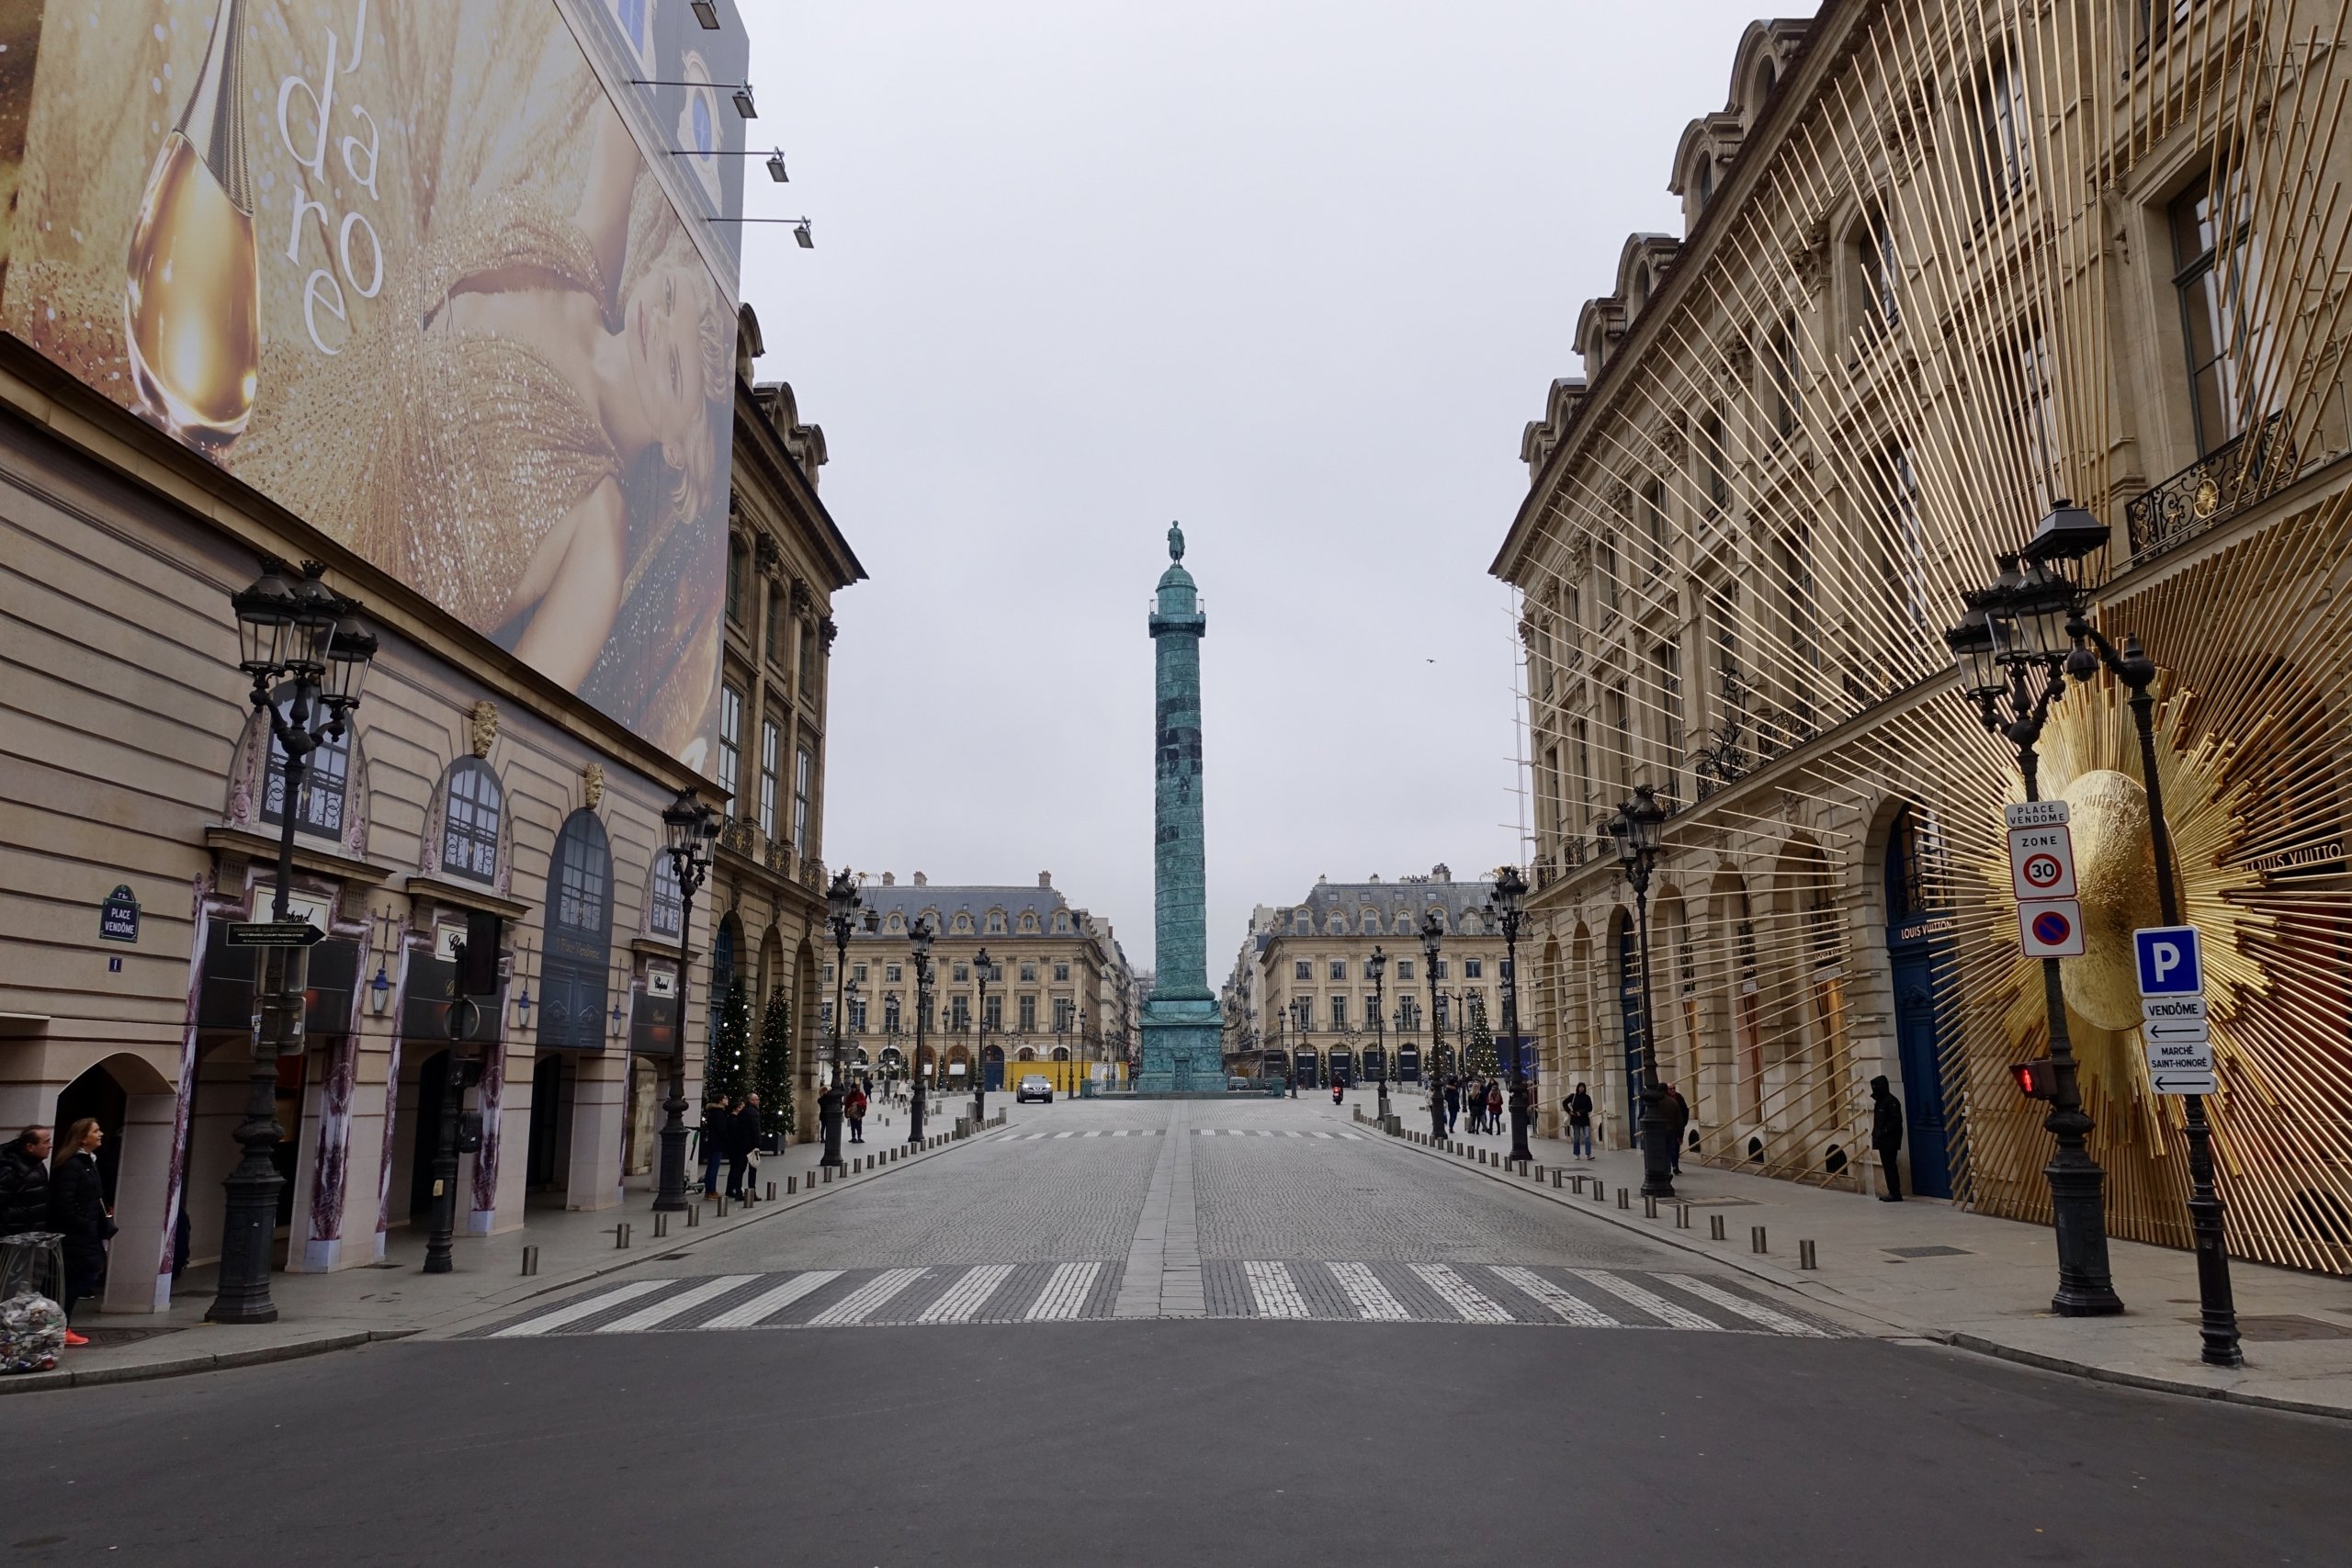 Louis Vuitton has returned to Place Vendome Paris, France